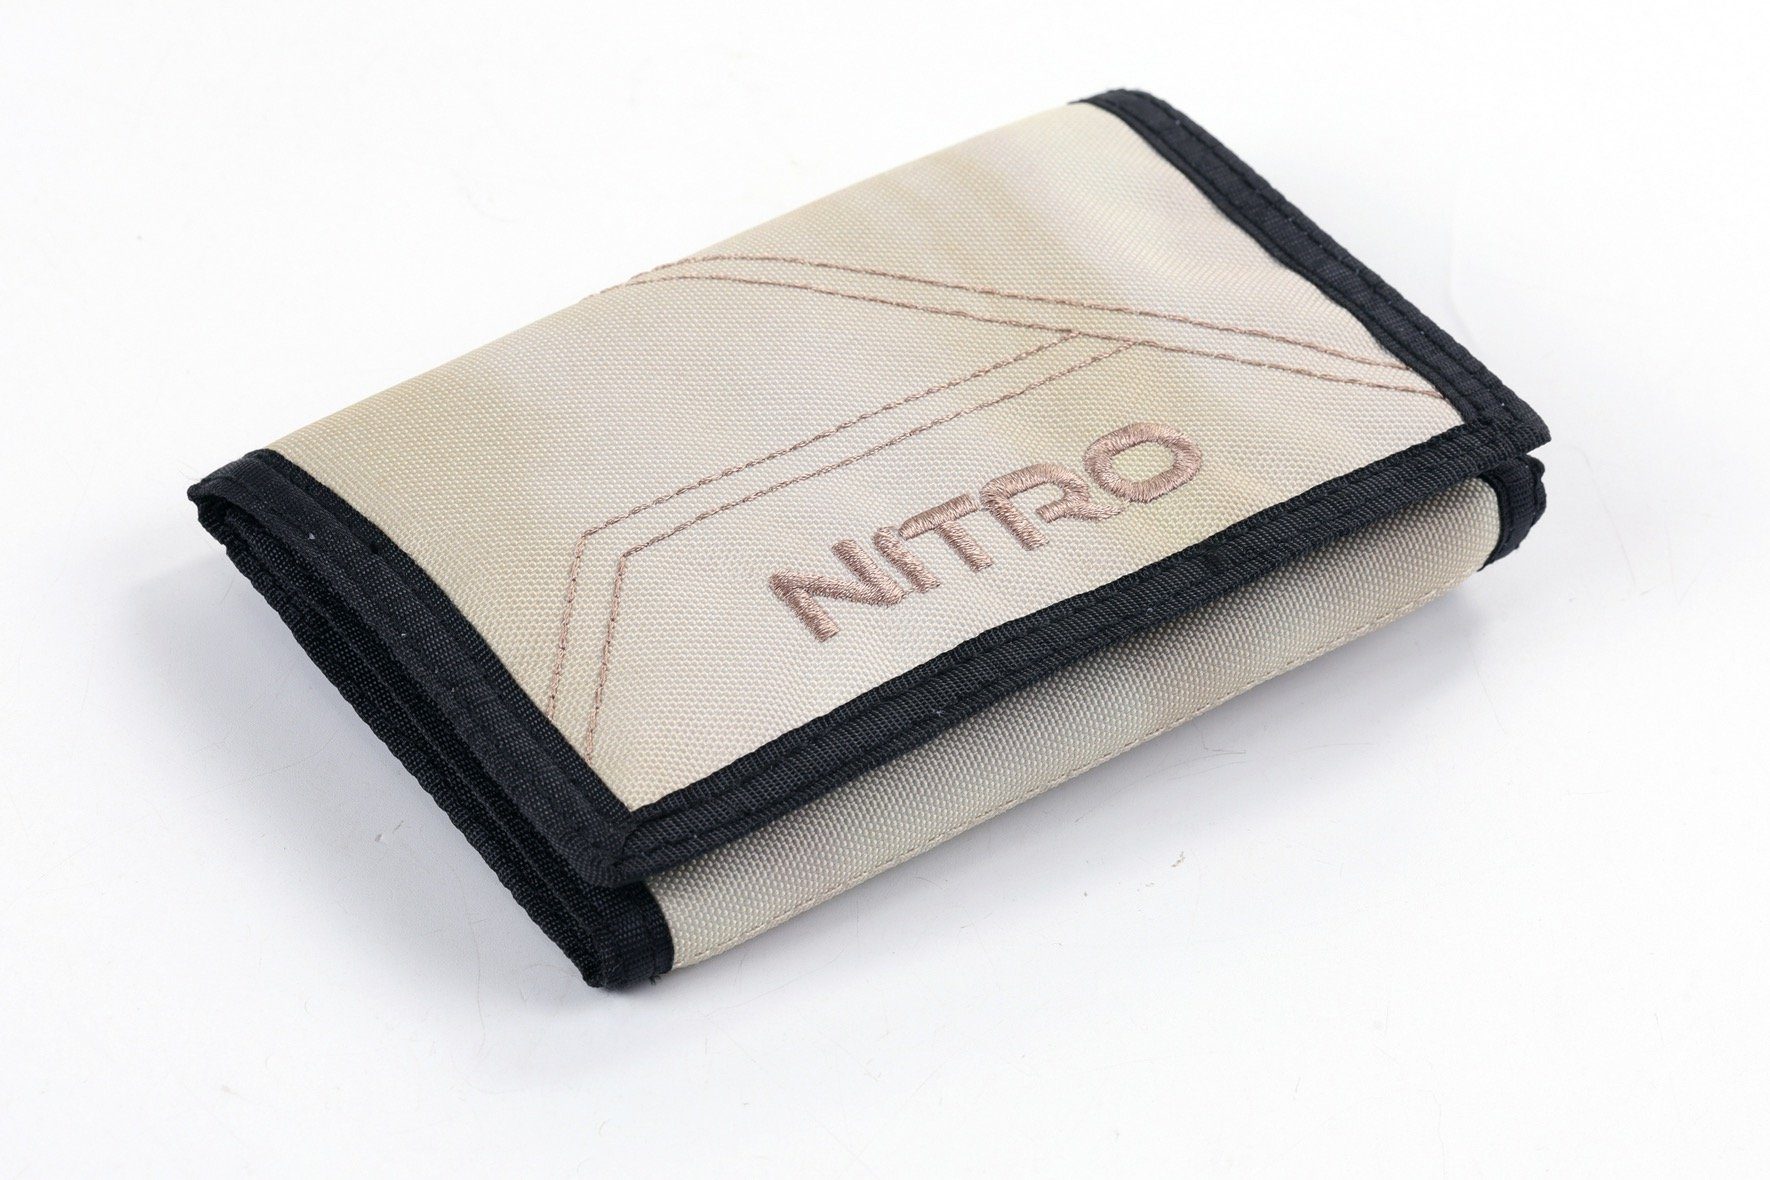 NITRO Geldbörse Wallet, Night Sky, Dune mit Schlüsselring praktischem